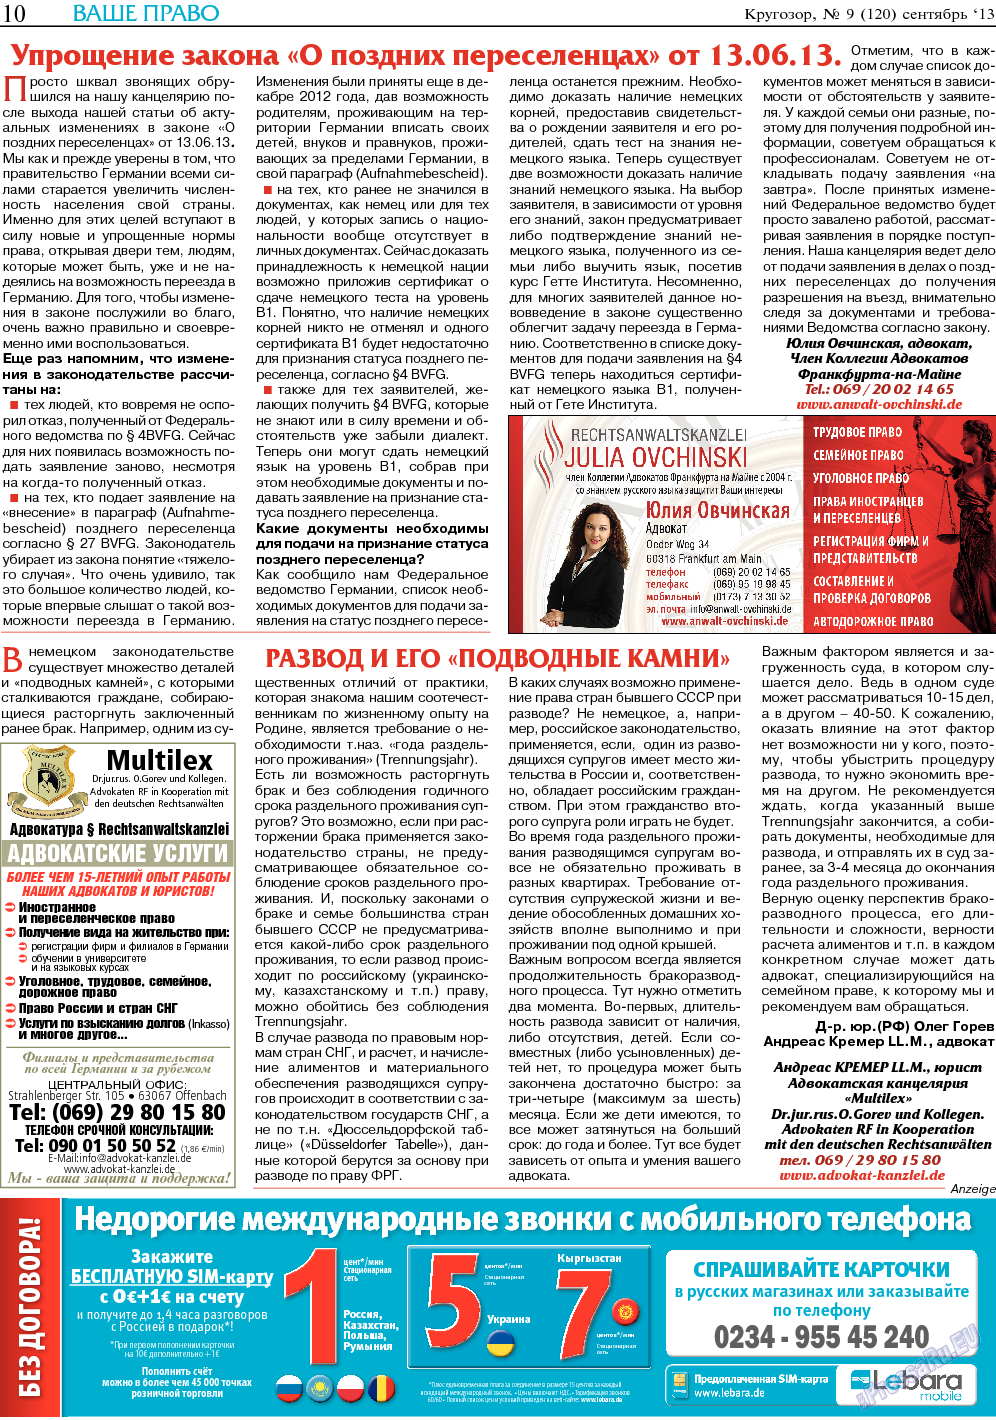 Кругозор, газета. 2013 №9 стр.10